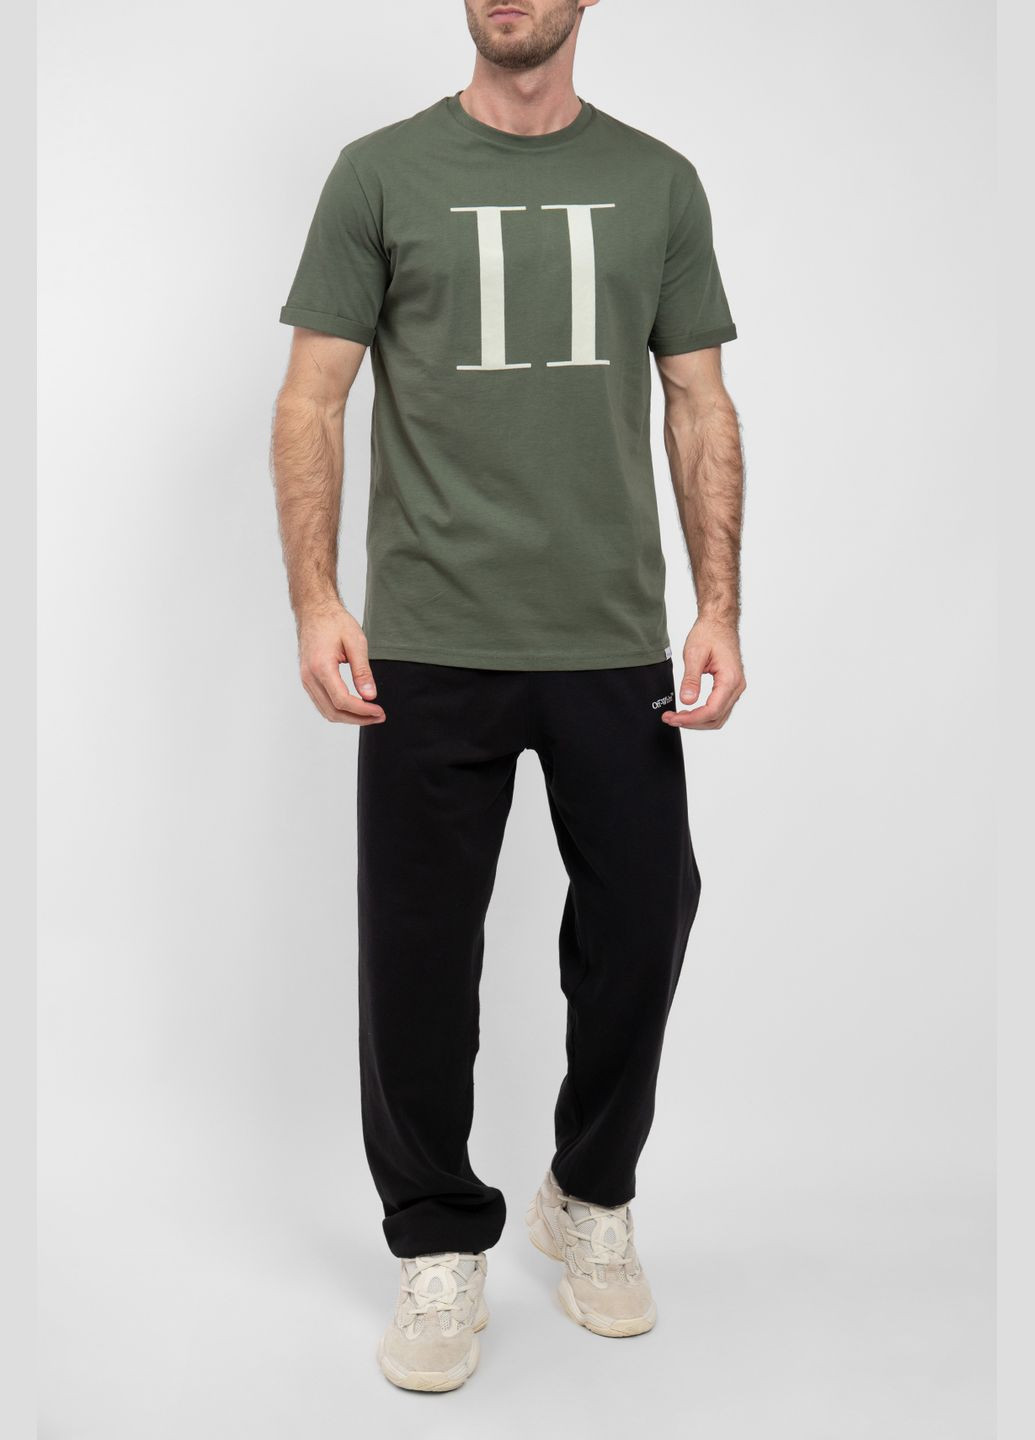 Хаки (оливковая) хлопковая футболка цвета хаки с нашивкой Les Deux